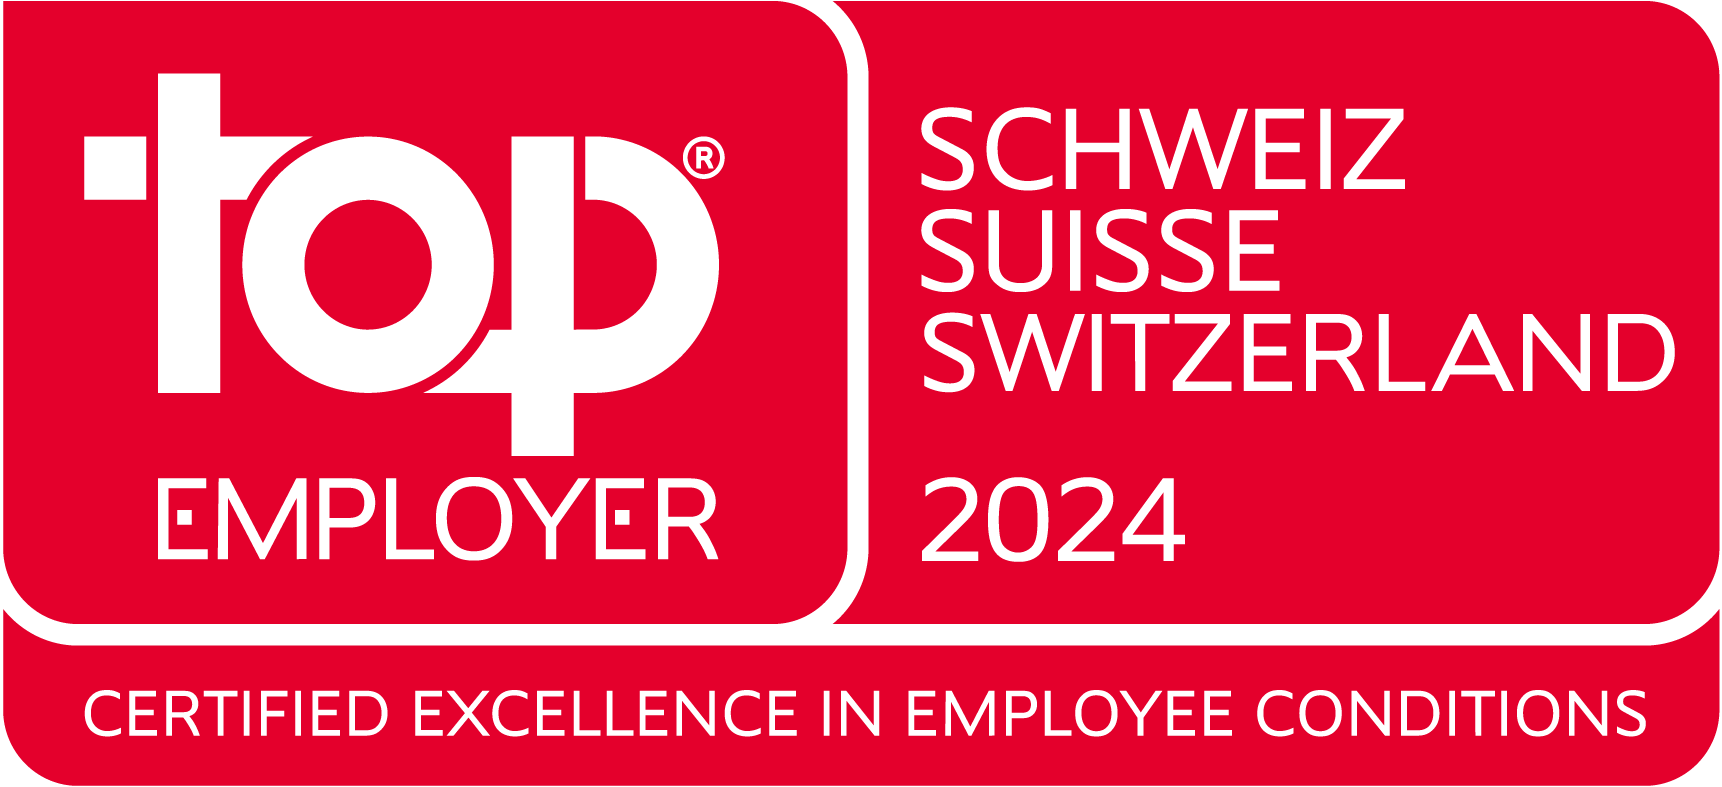 Top_Employer_Switzerland_2022